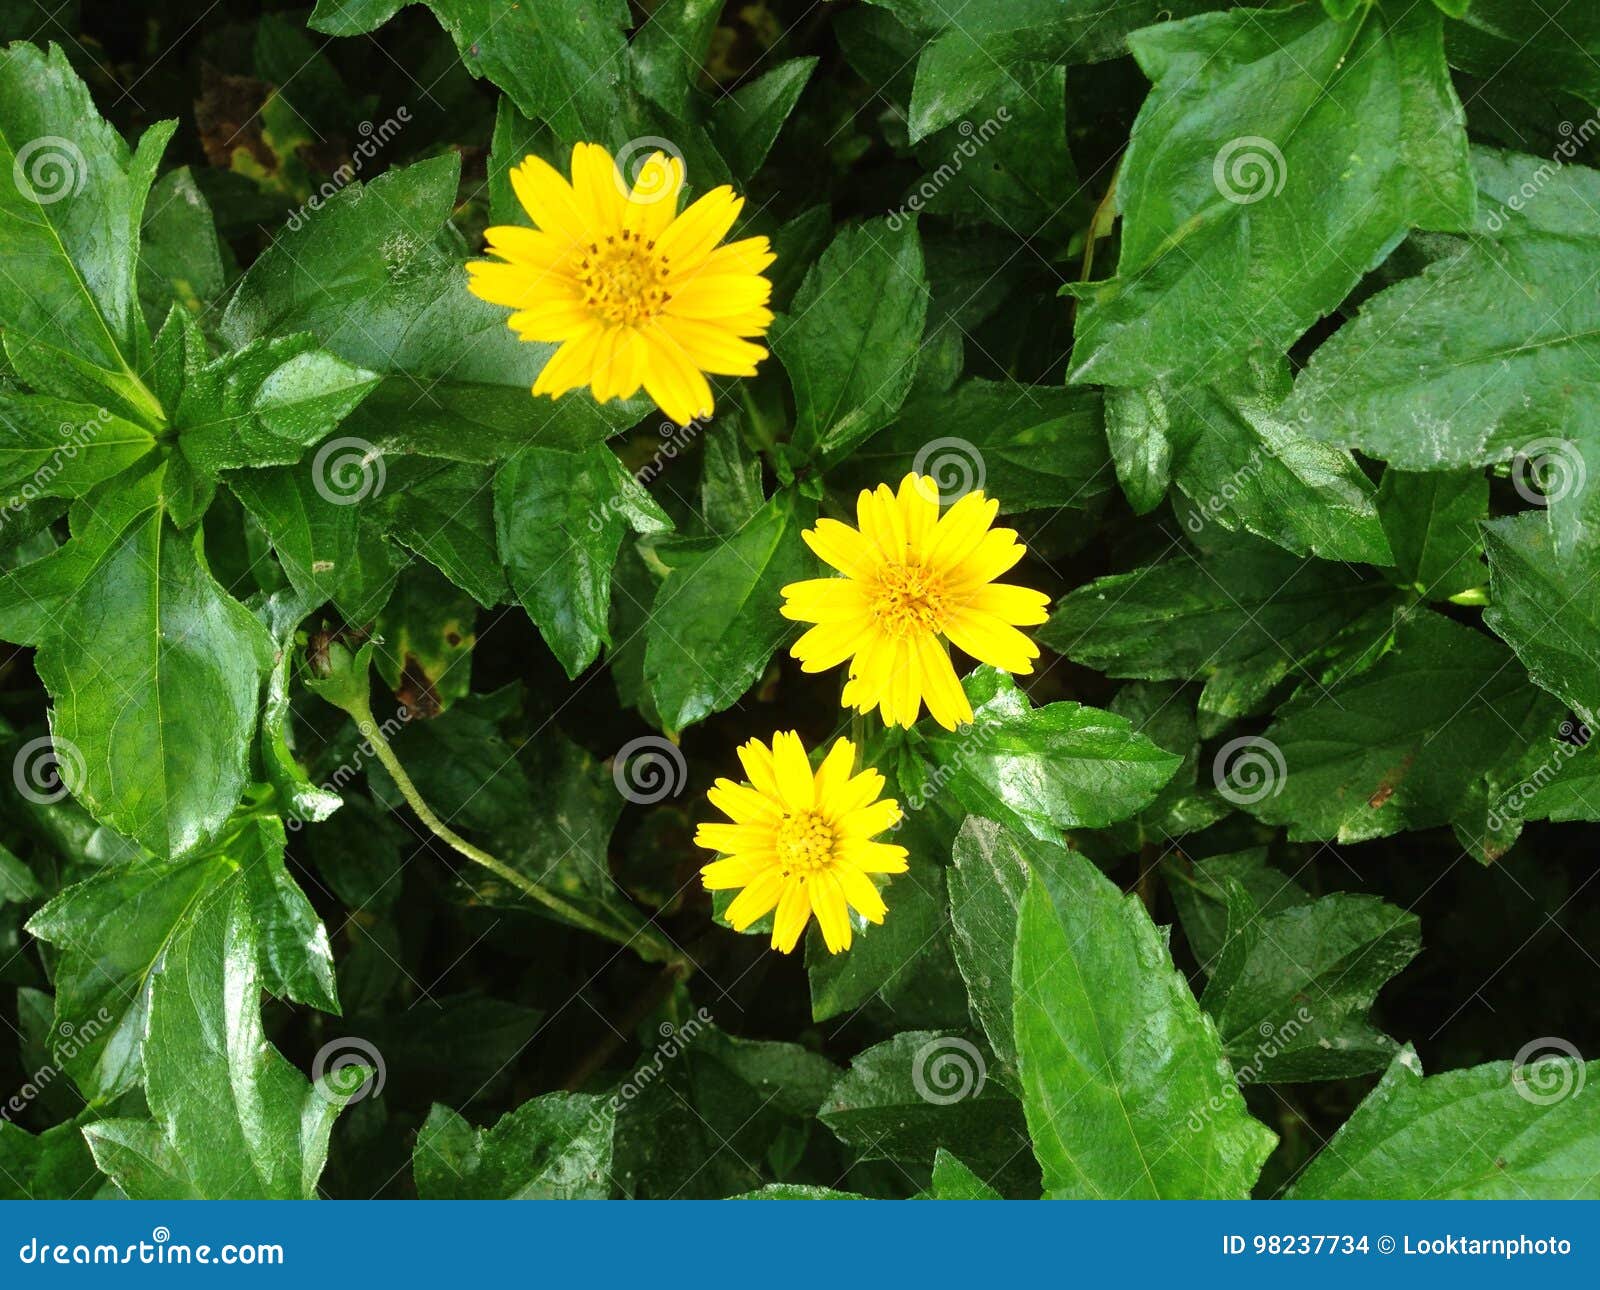 Melampodium Divaricatum Or Little Yellow Star Flower Stock